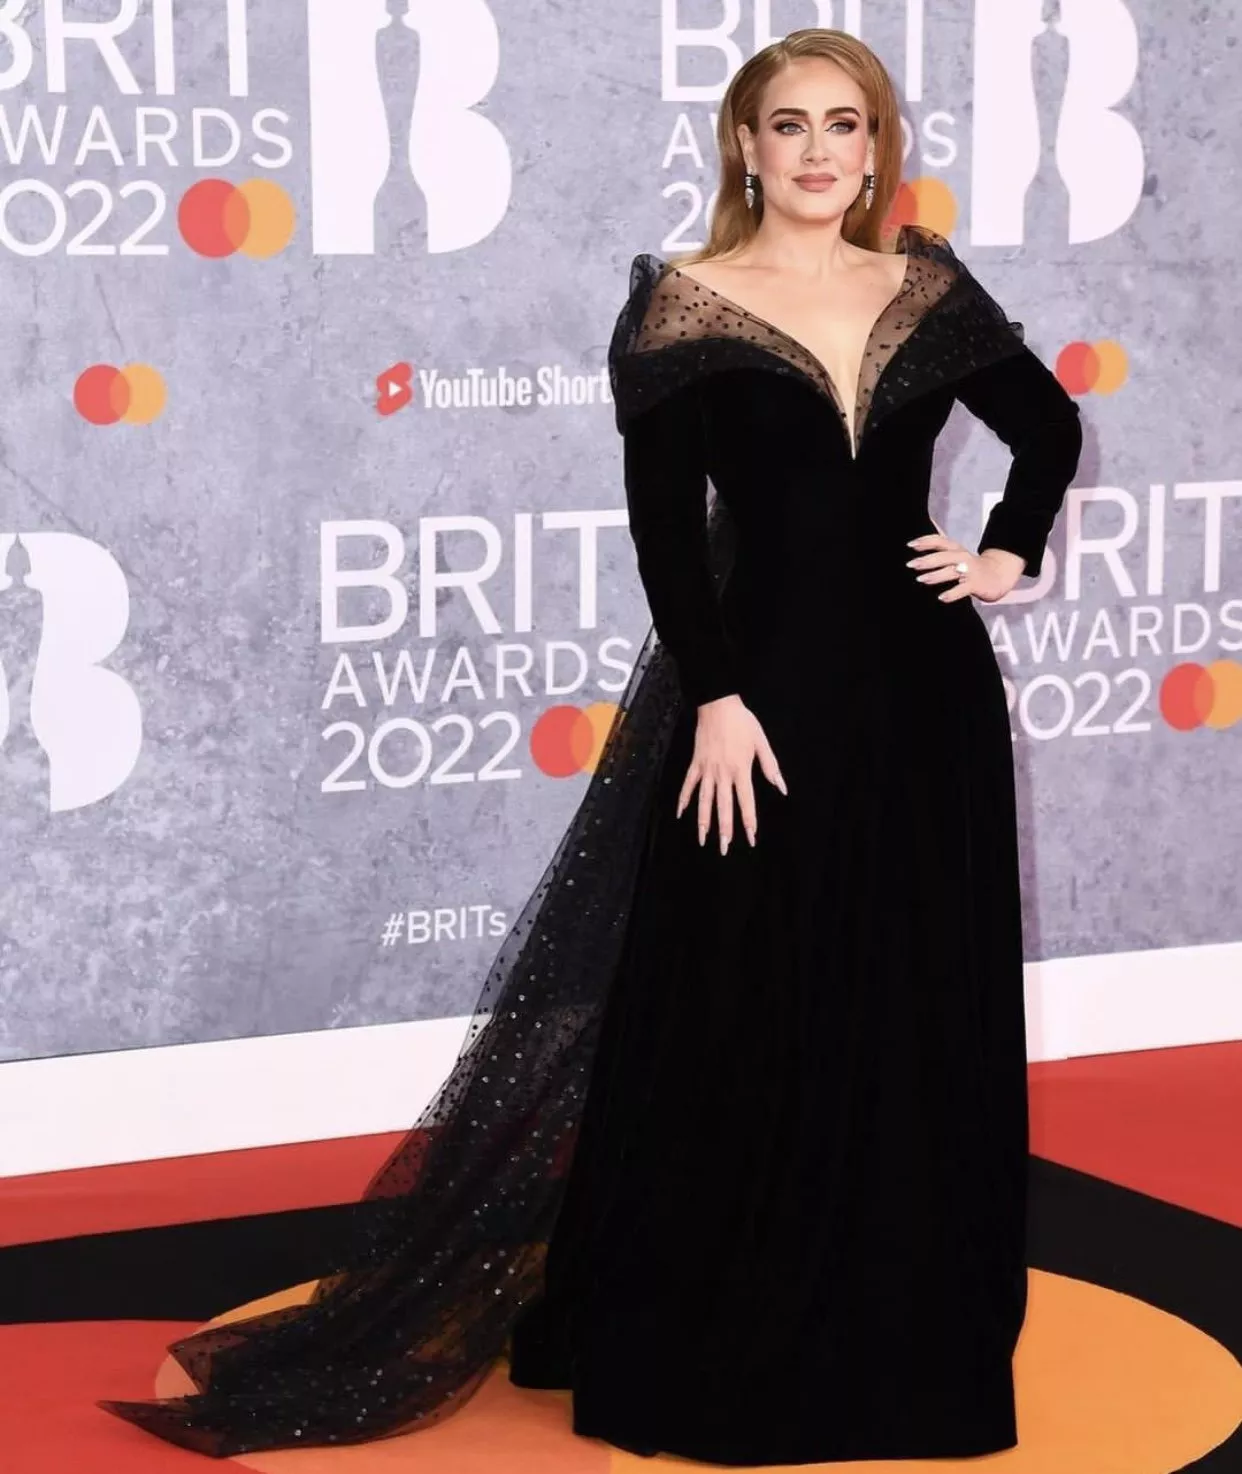 أديل تطل بلوك مُبهر في حفل Brit Awards في لندن وتفوز بـ3 جوائز موسيقية كبرى!